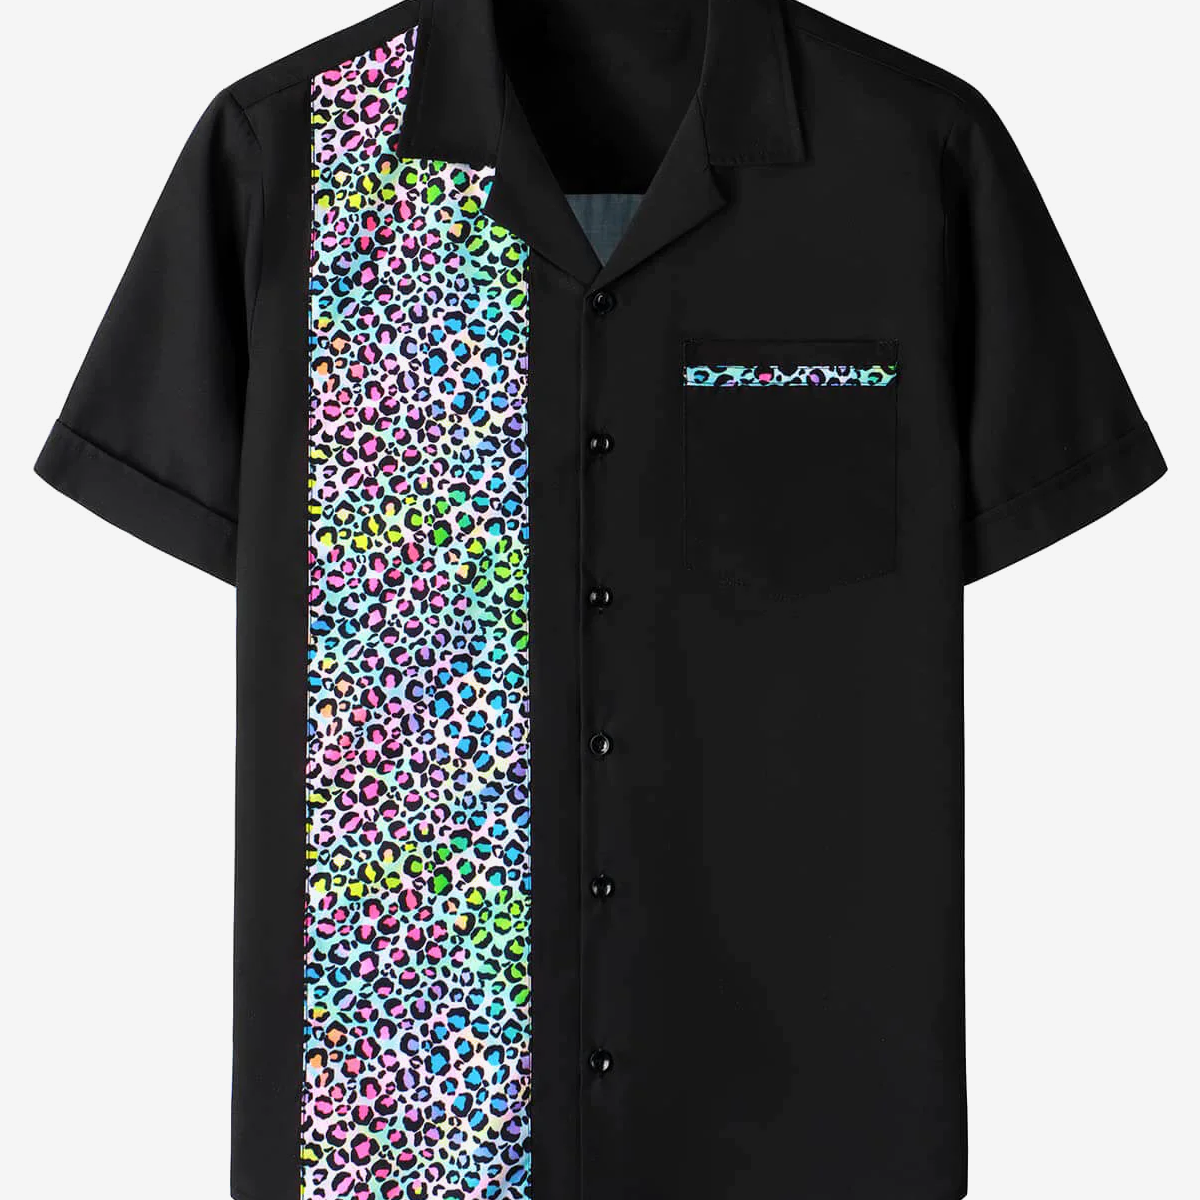 Men's 50's Leopard Print Button Up Cotton Bowling Summer Short Sleeve Shirt